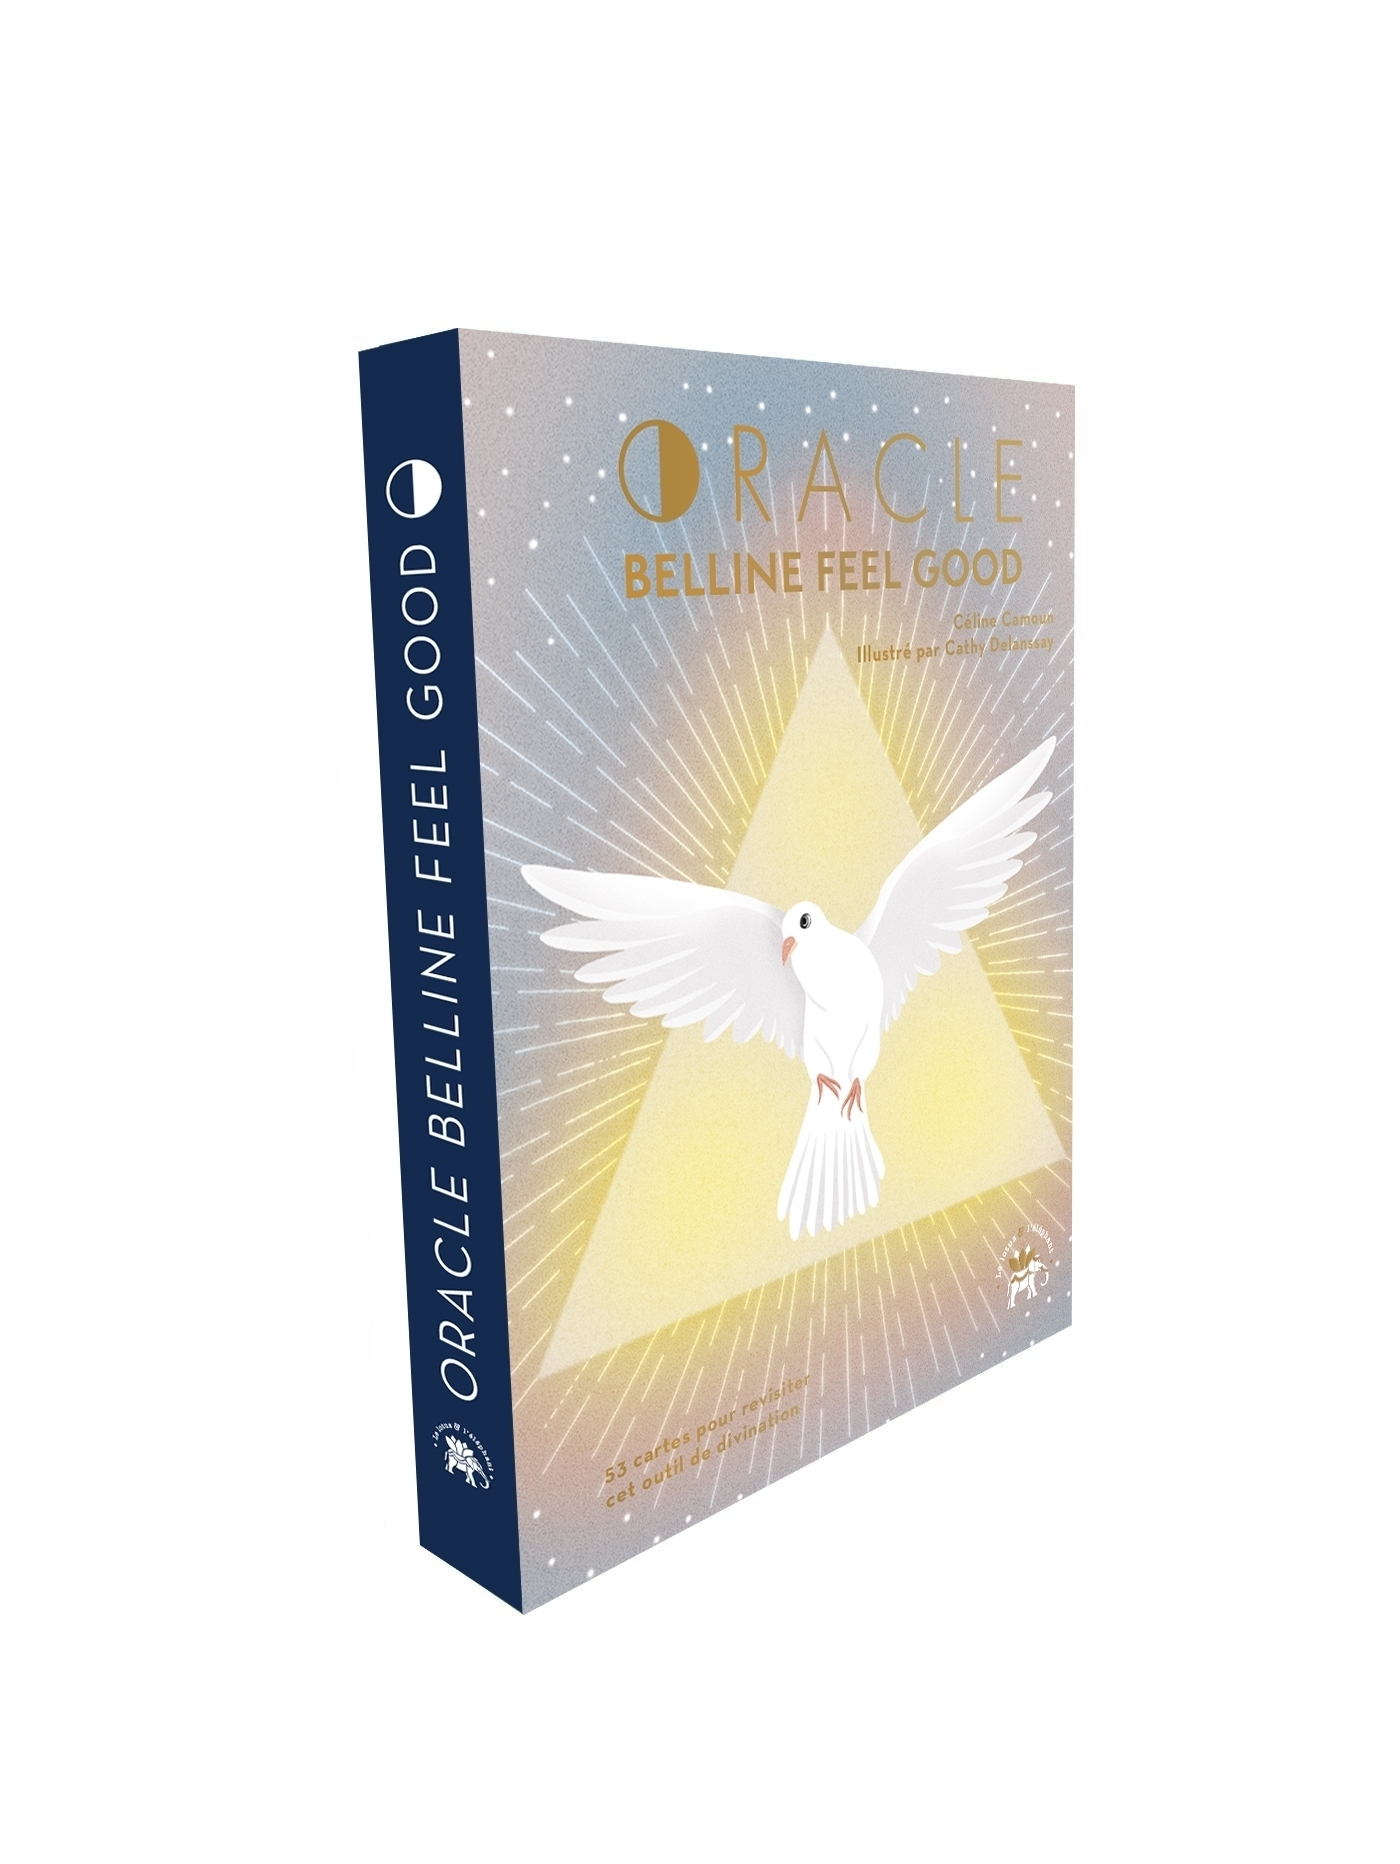 L'Oracle de Belline cartes : avis, présentation et review